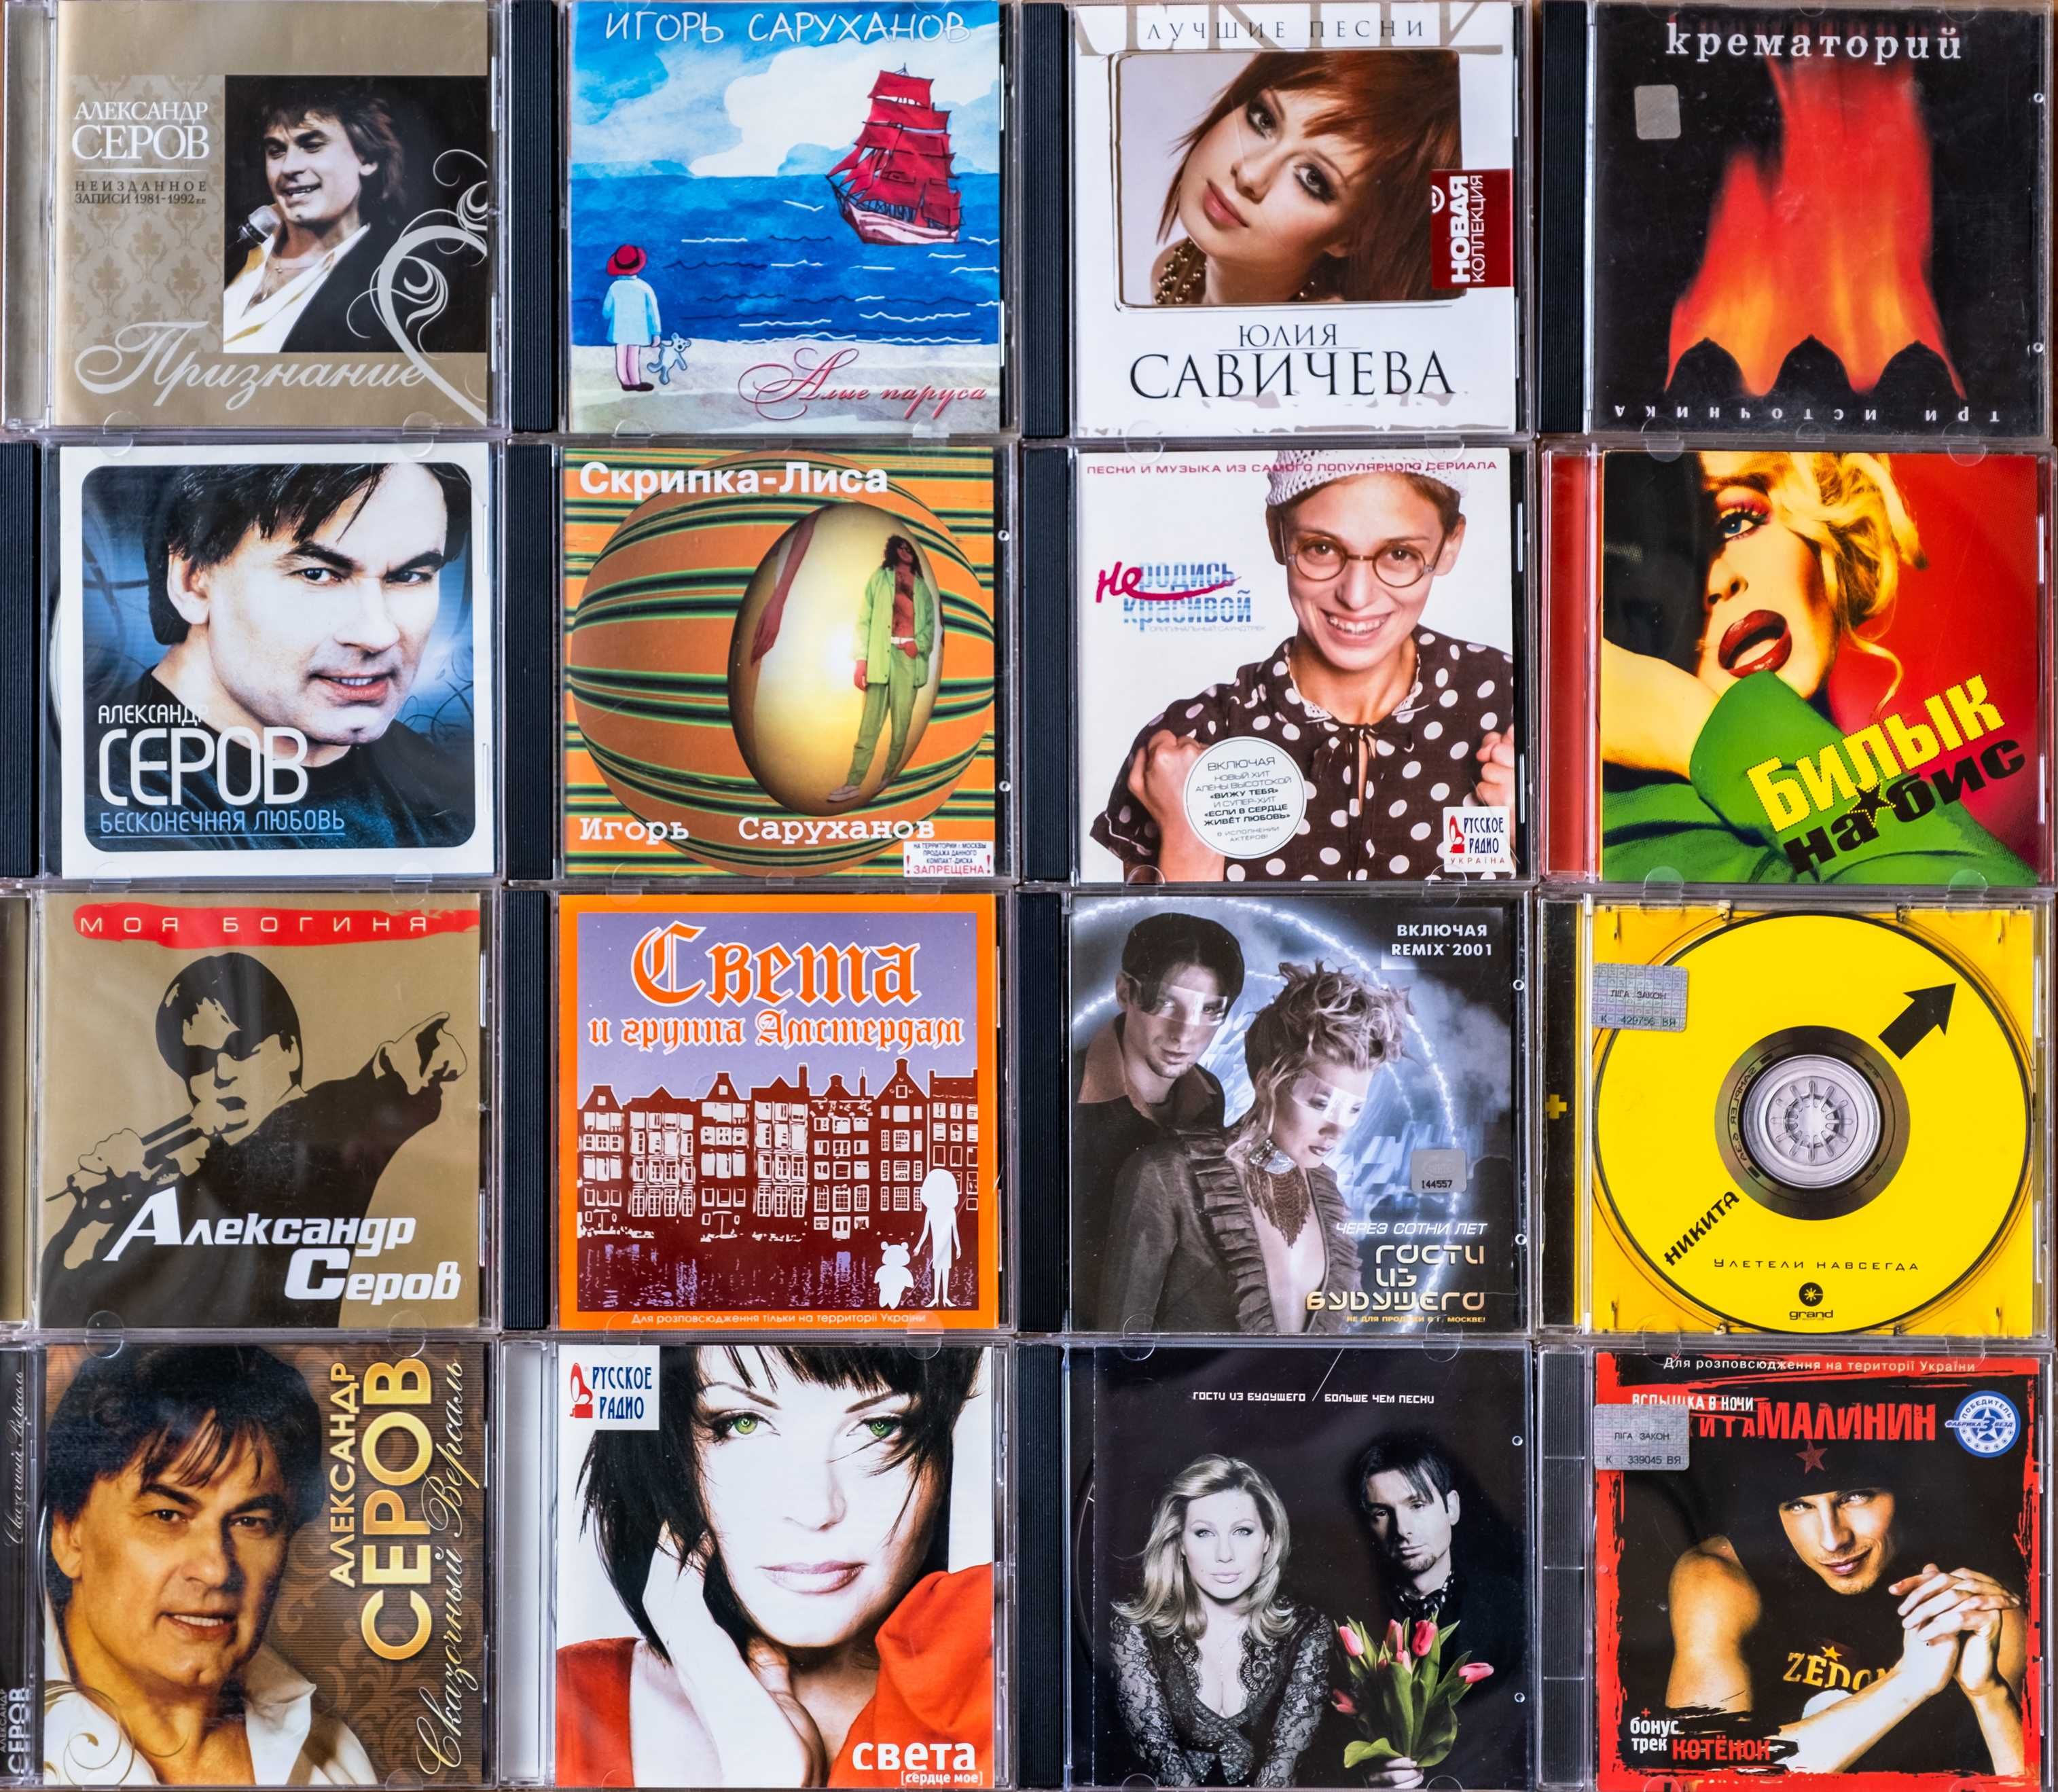 Лицензионные компакт диски CD audio (музыка), CD-DA. Русский популляр.